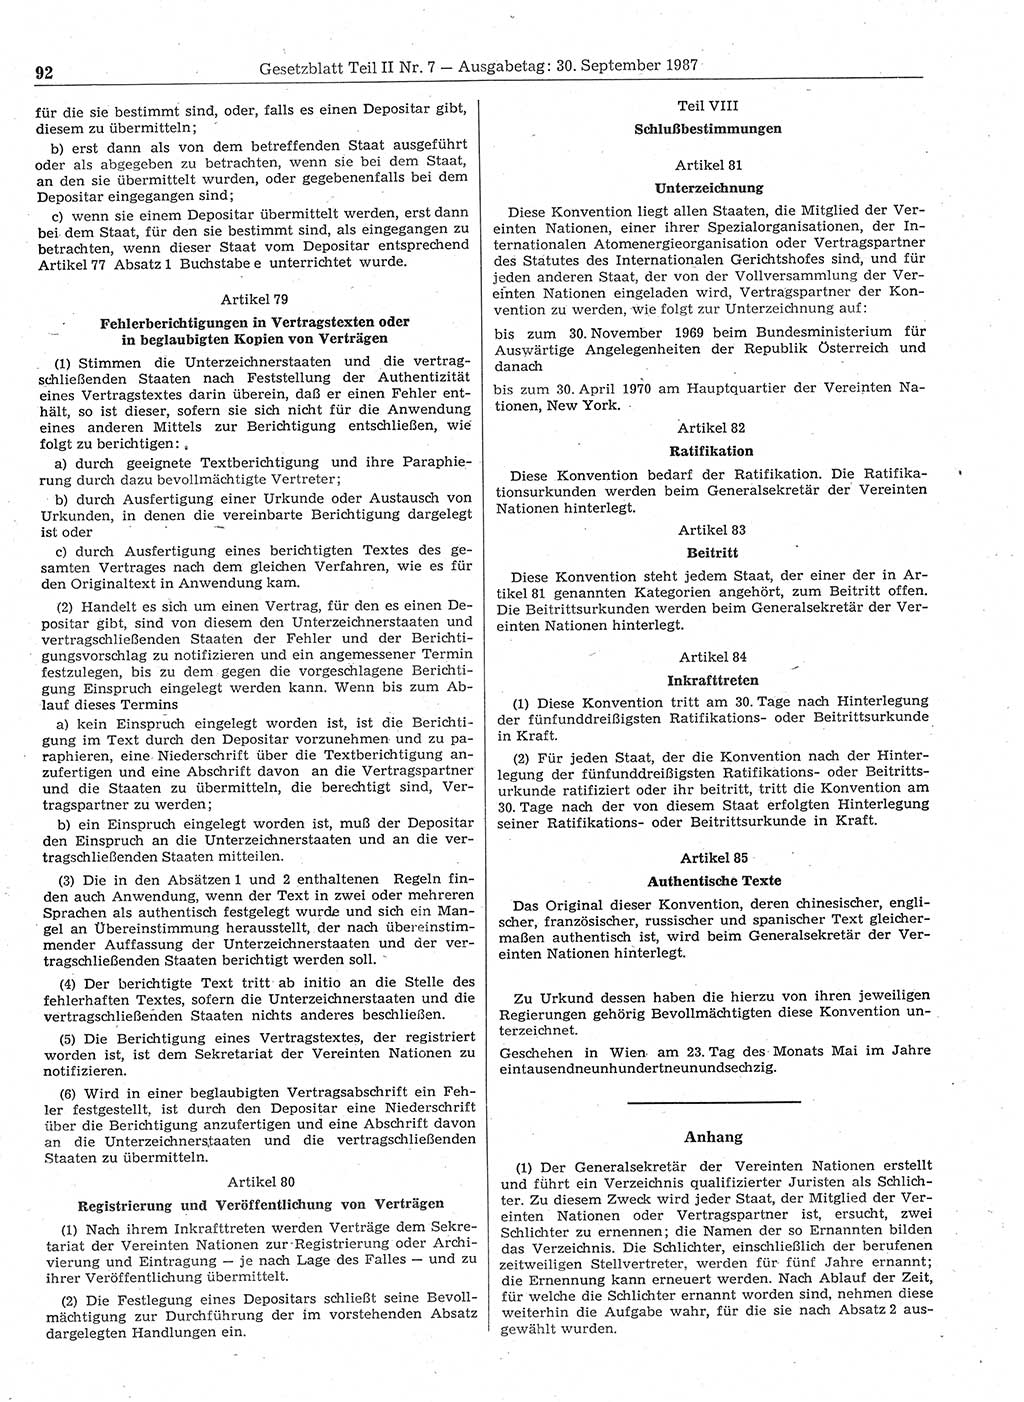 Gesetzblatt (GBl.) der Deutschen Demokratischen Republik (DDR) Teil ⅠⅠ 1987, Seite 92 (GBl. DDR ⅠⅠ 1987, S. 92)